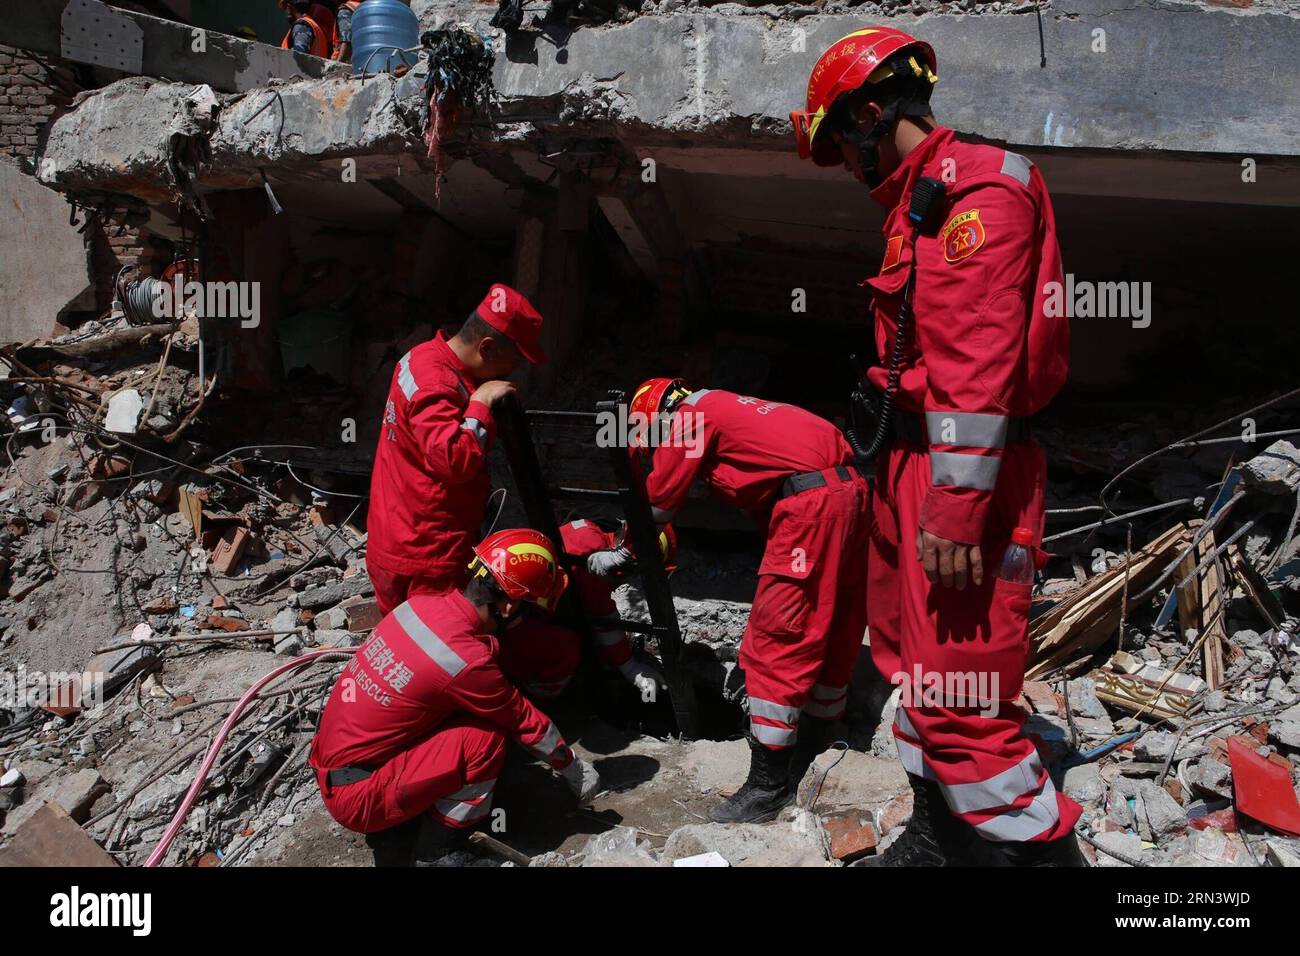 KATMANDU, 27 aprile 2015 -- i membri del China International Search and Rescue Team (CISAR) lavorano nel sito di salvataggio nella capitale del Nepal Katmandu il 27 aprile 2015. I membri di CISAR hanno trovato con successo il secondo sopravvissuto al terremoto dopo 34 ore di lavoro di salvataggio a Katmandu lunedì. ) NEPAL-KATMANDU-CHINA-RESCUE TEAM-SURVIVOR BaixYang PUBLICATIONxNOTxINxCHN Katmandu aprile 27 2015 i membri del team cinese di ricerca e soccorso CISAR lavorano PRESSO il sito di soccorso nella capitale Katmandu del Nepal IL 27 2015 aprile i membri di CISAR hanno trovato con successo il secondo Survivor dopo 34 ore di lavoro di salvataggio a Kat Foto Stock